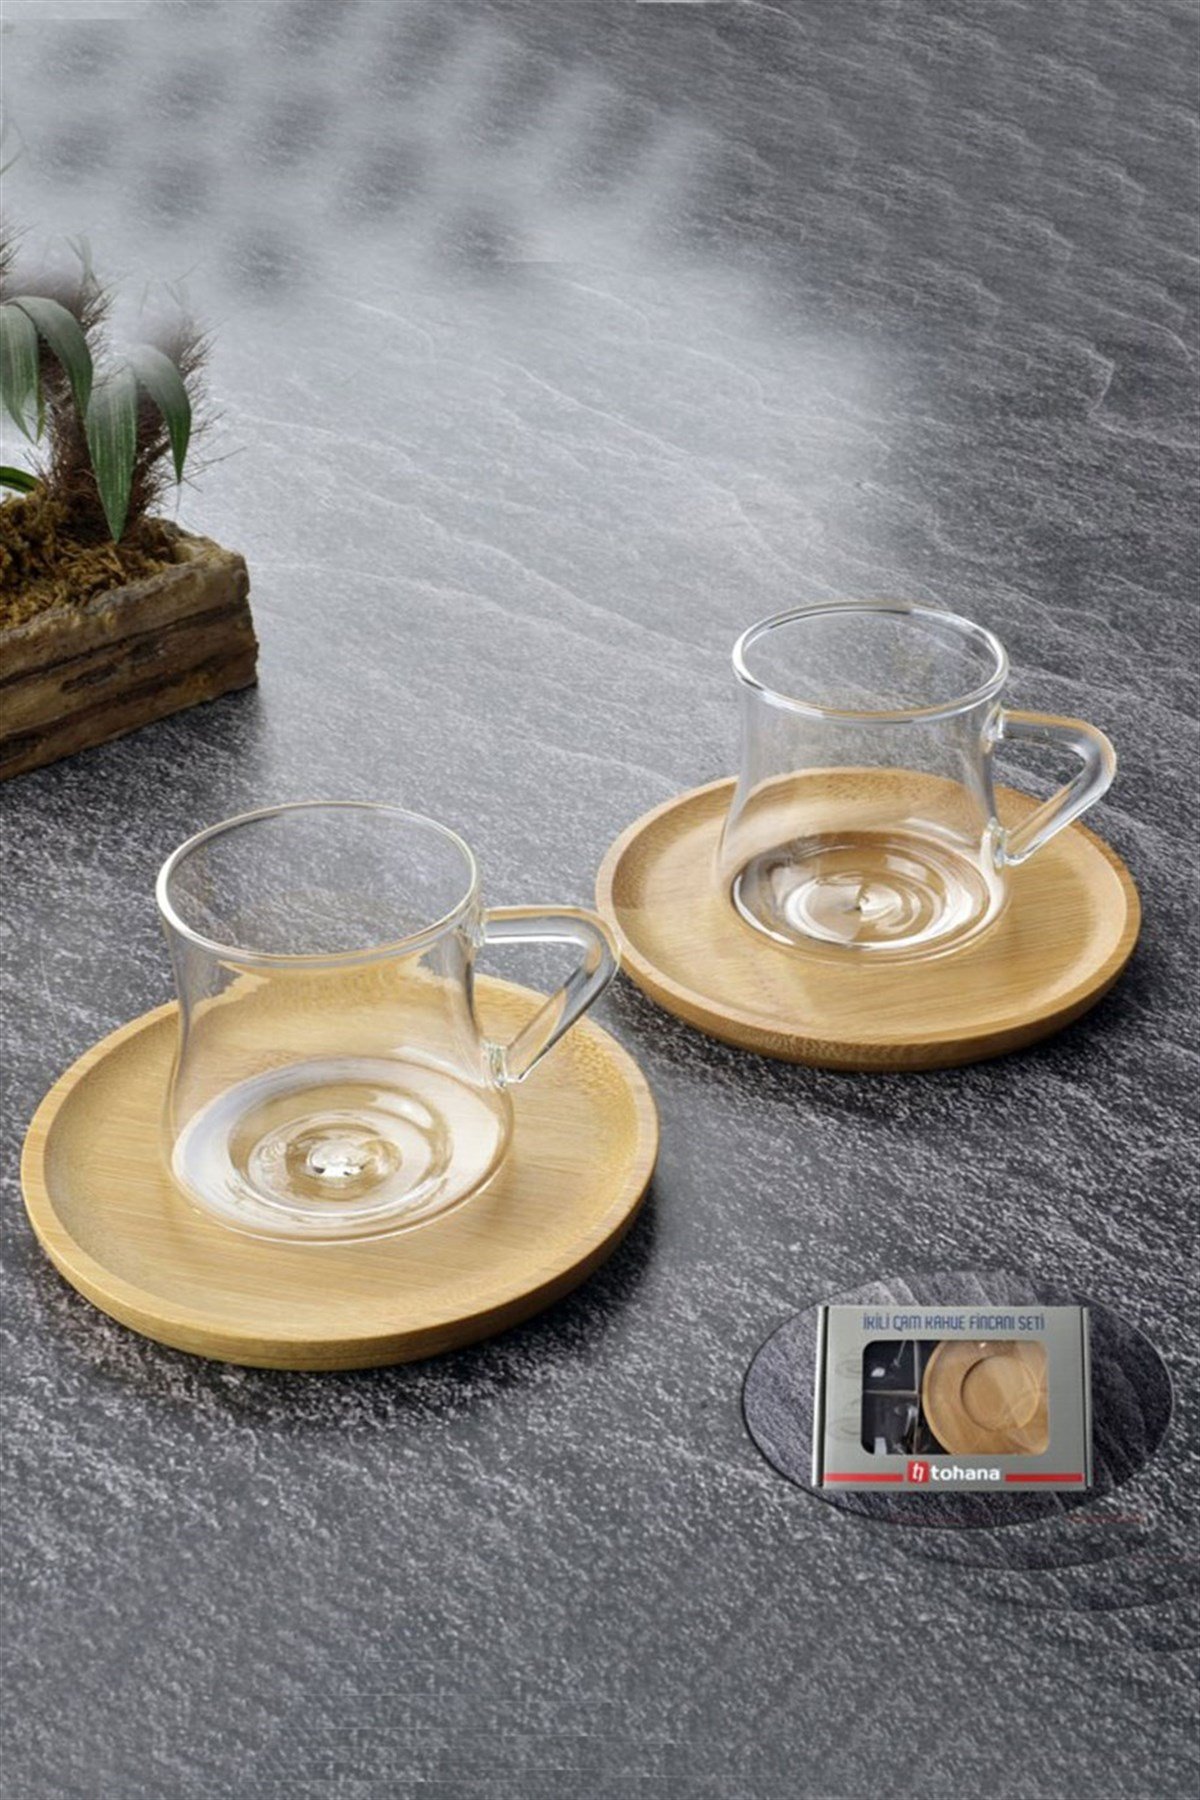 Kişiye özel bambu tabaklı cam 2'li kahve fincan takımı, şıklığı ve  özgünlüğü bir arada sunuyor. Özel tasarımıyla dikkat çeken bu fincan  takımı, cilgintrend.com'da sizleri bekliyor. Şimdi hemen inceleyin!